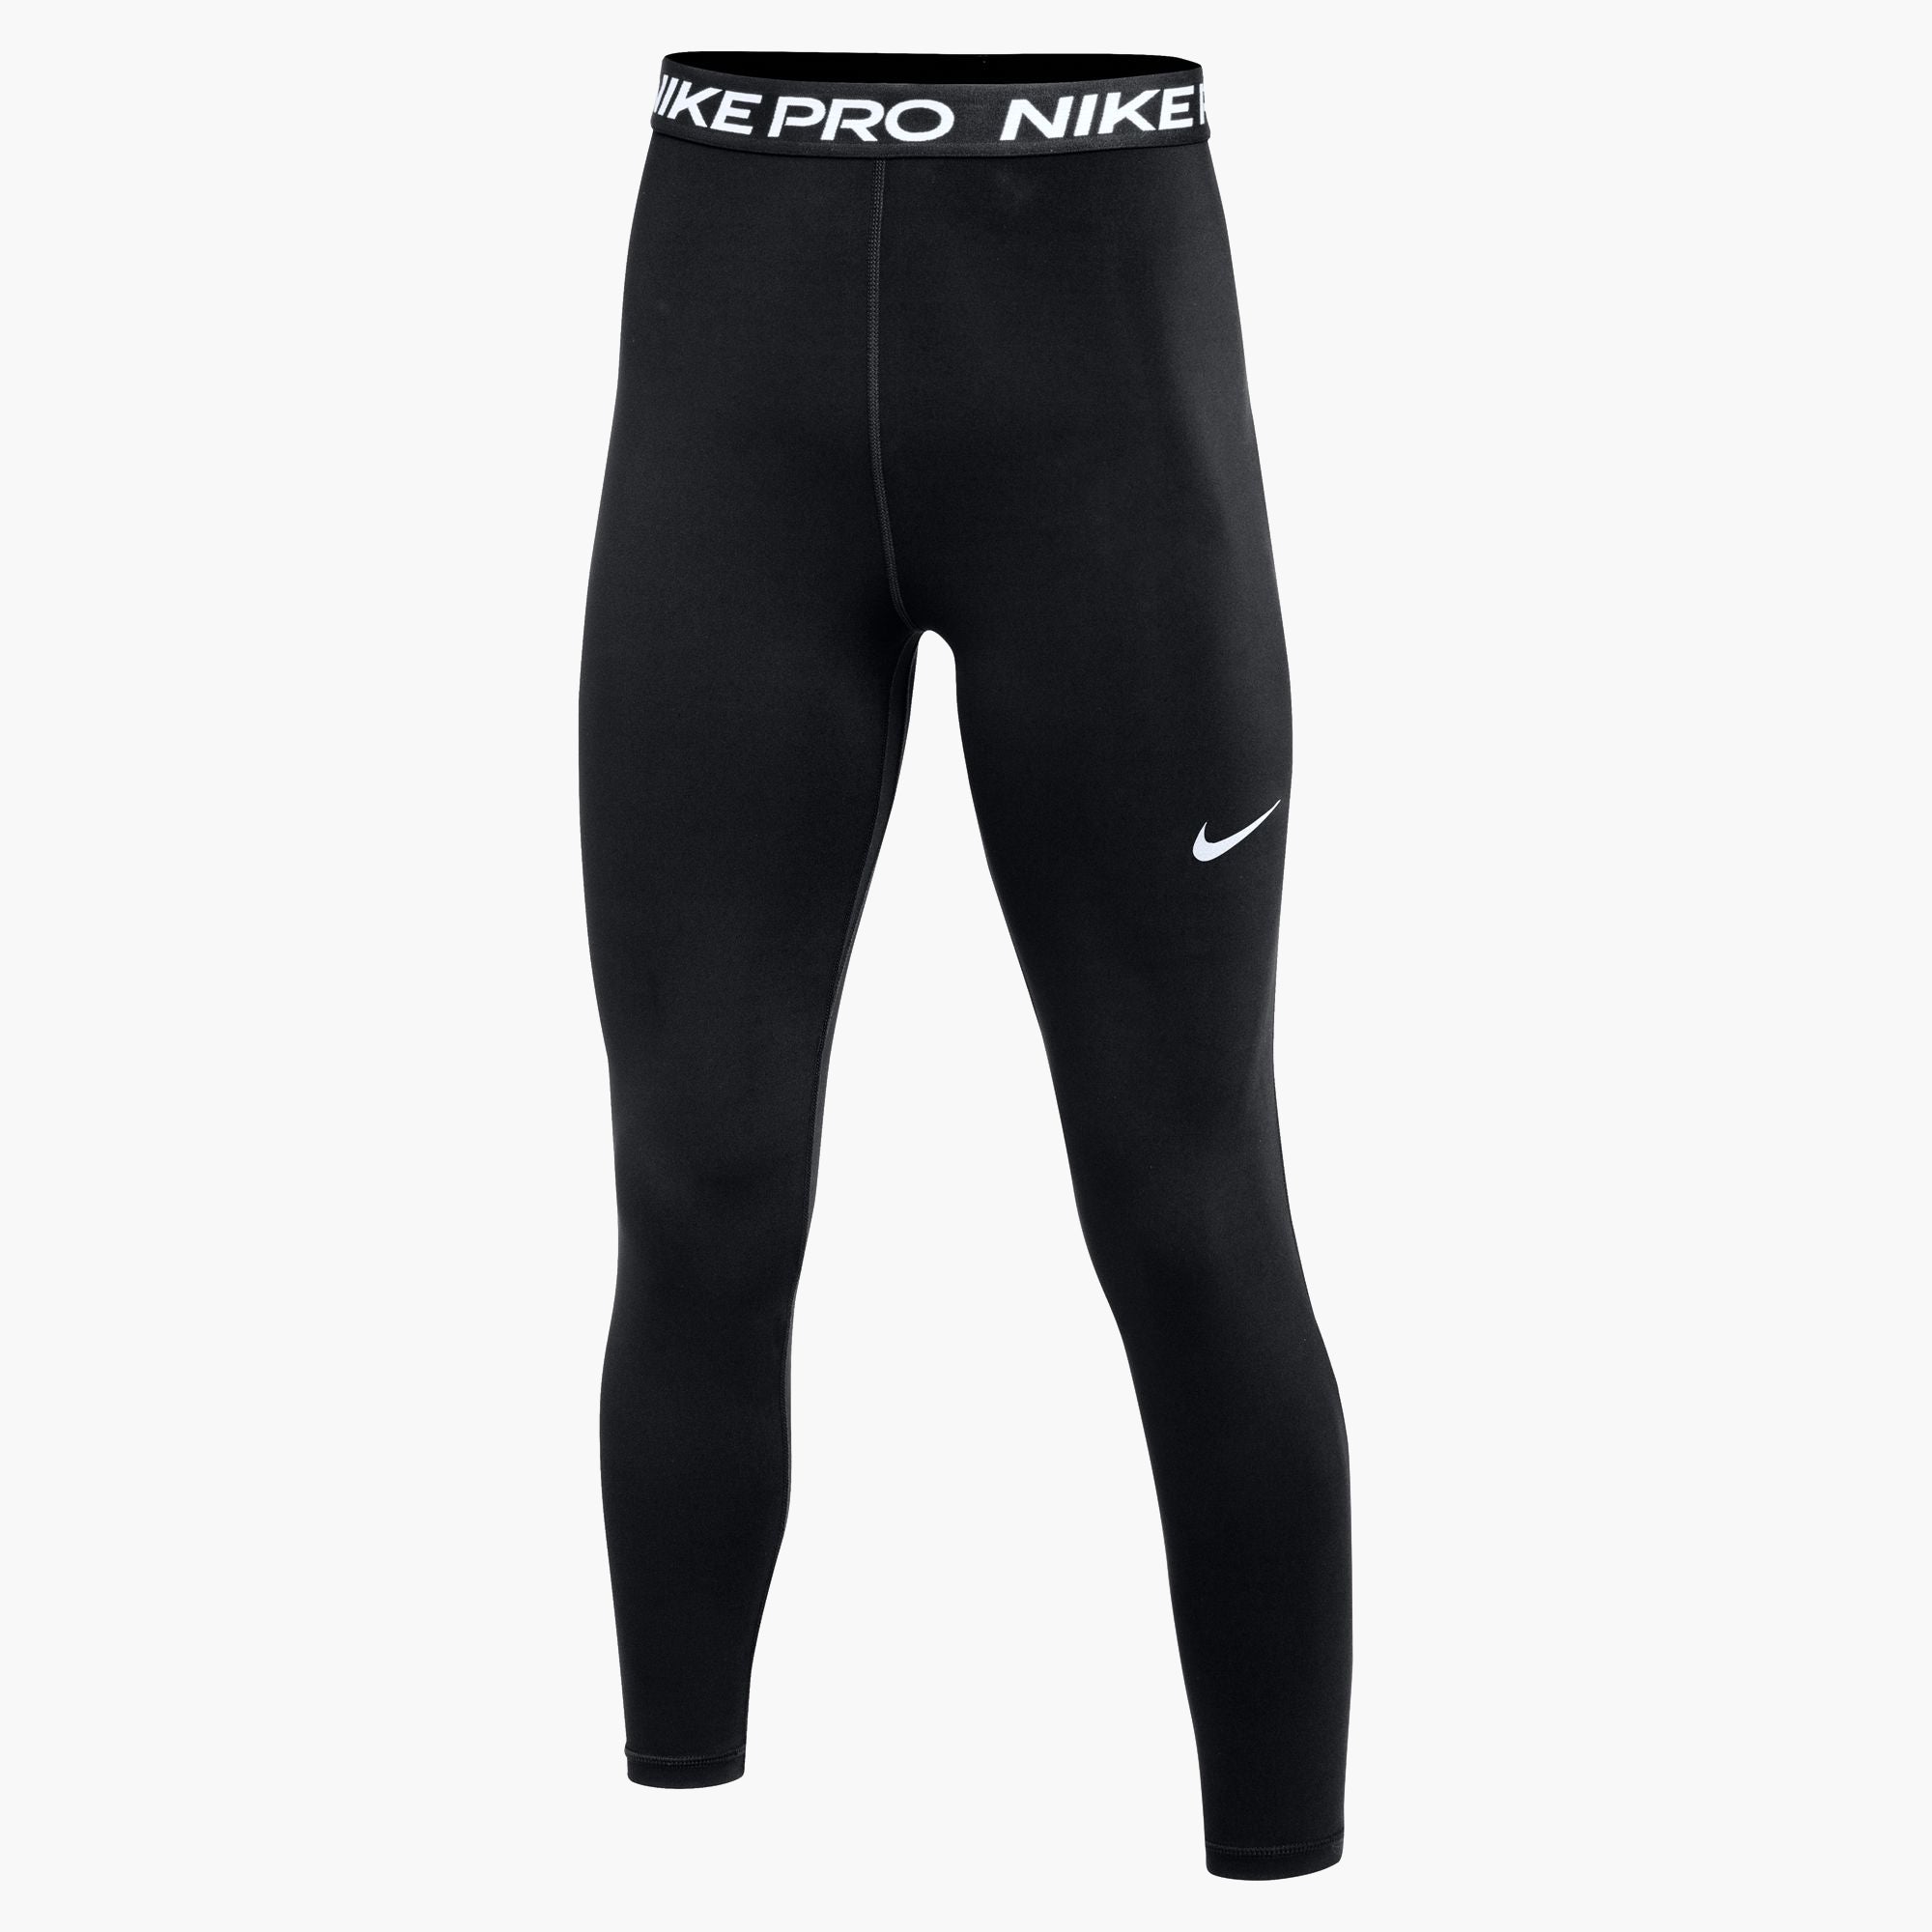 Nike 7/8 tights PRO DRI-FIT in black